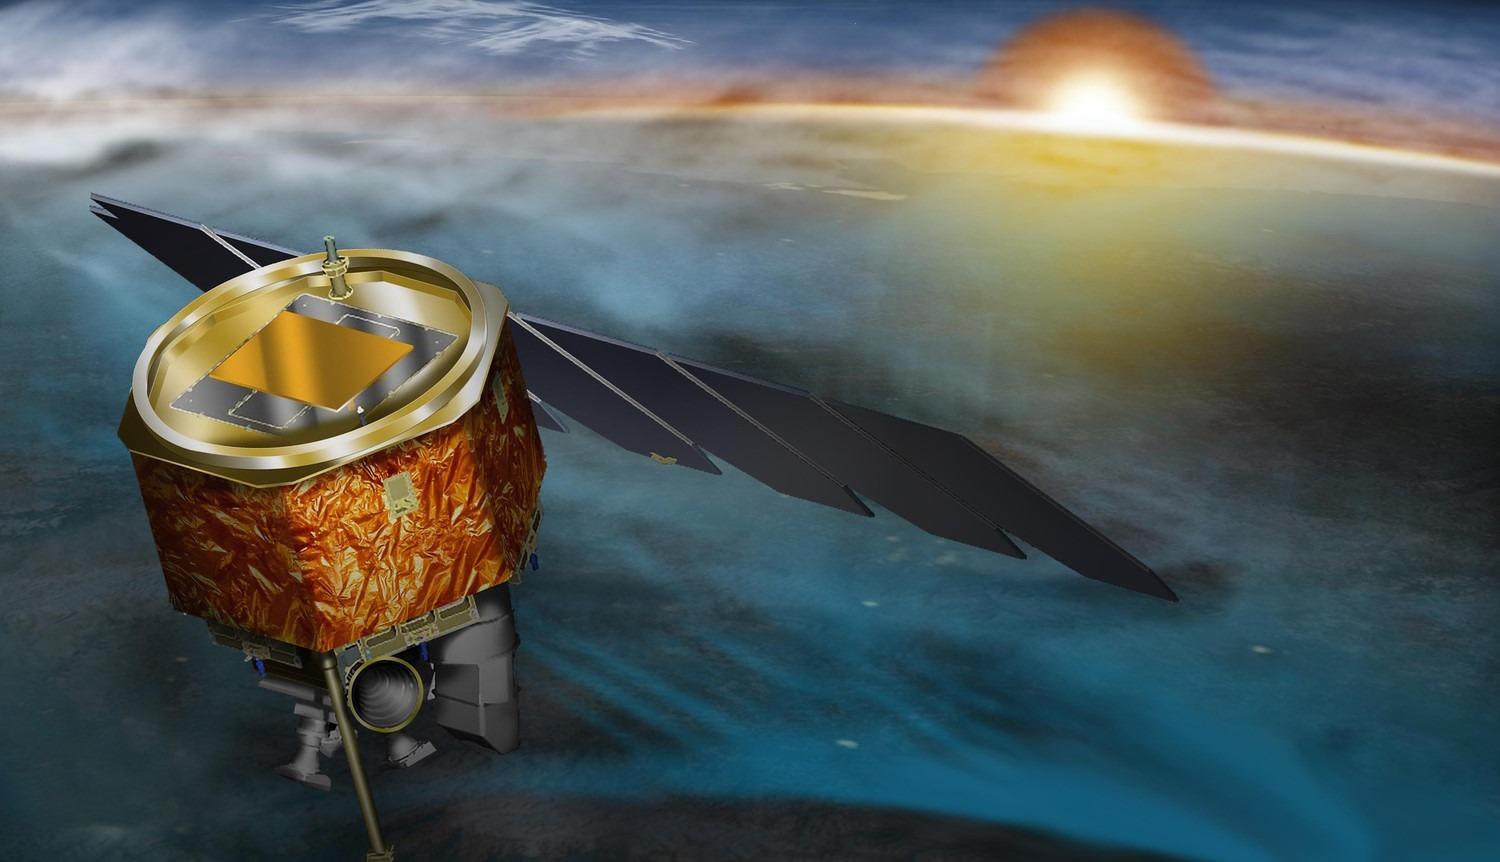 NASA encerra missão após perder contato com sonda espacial